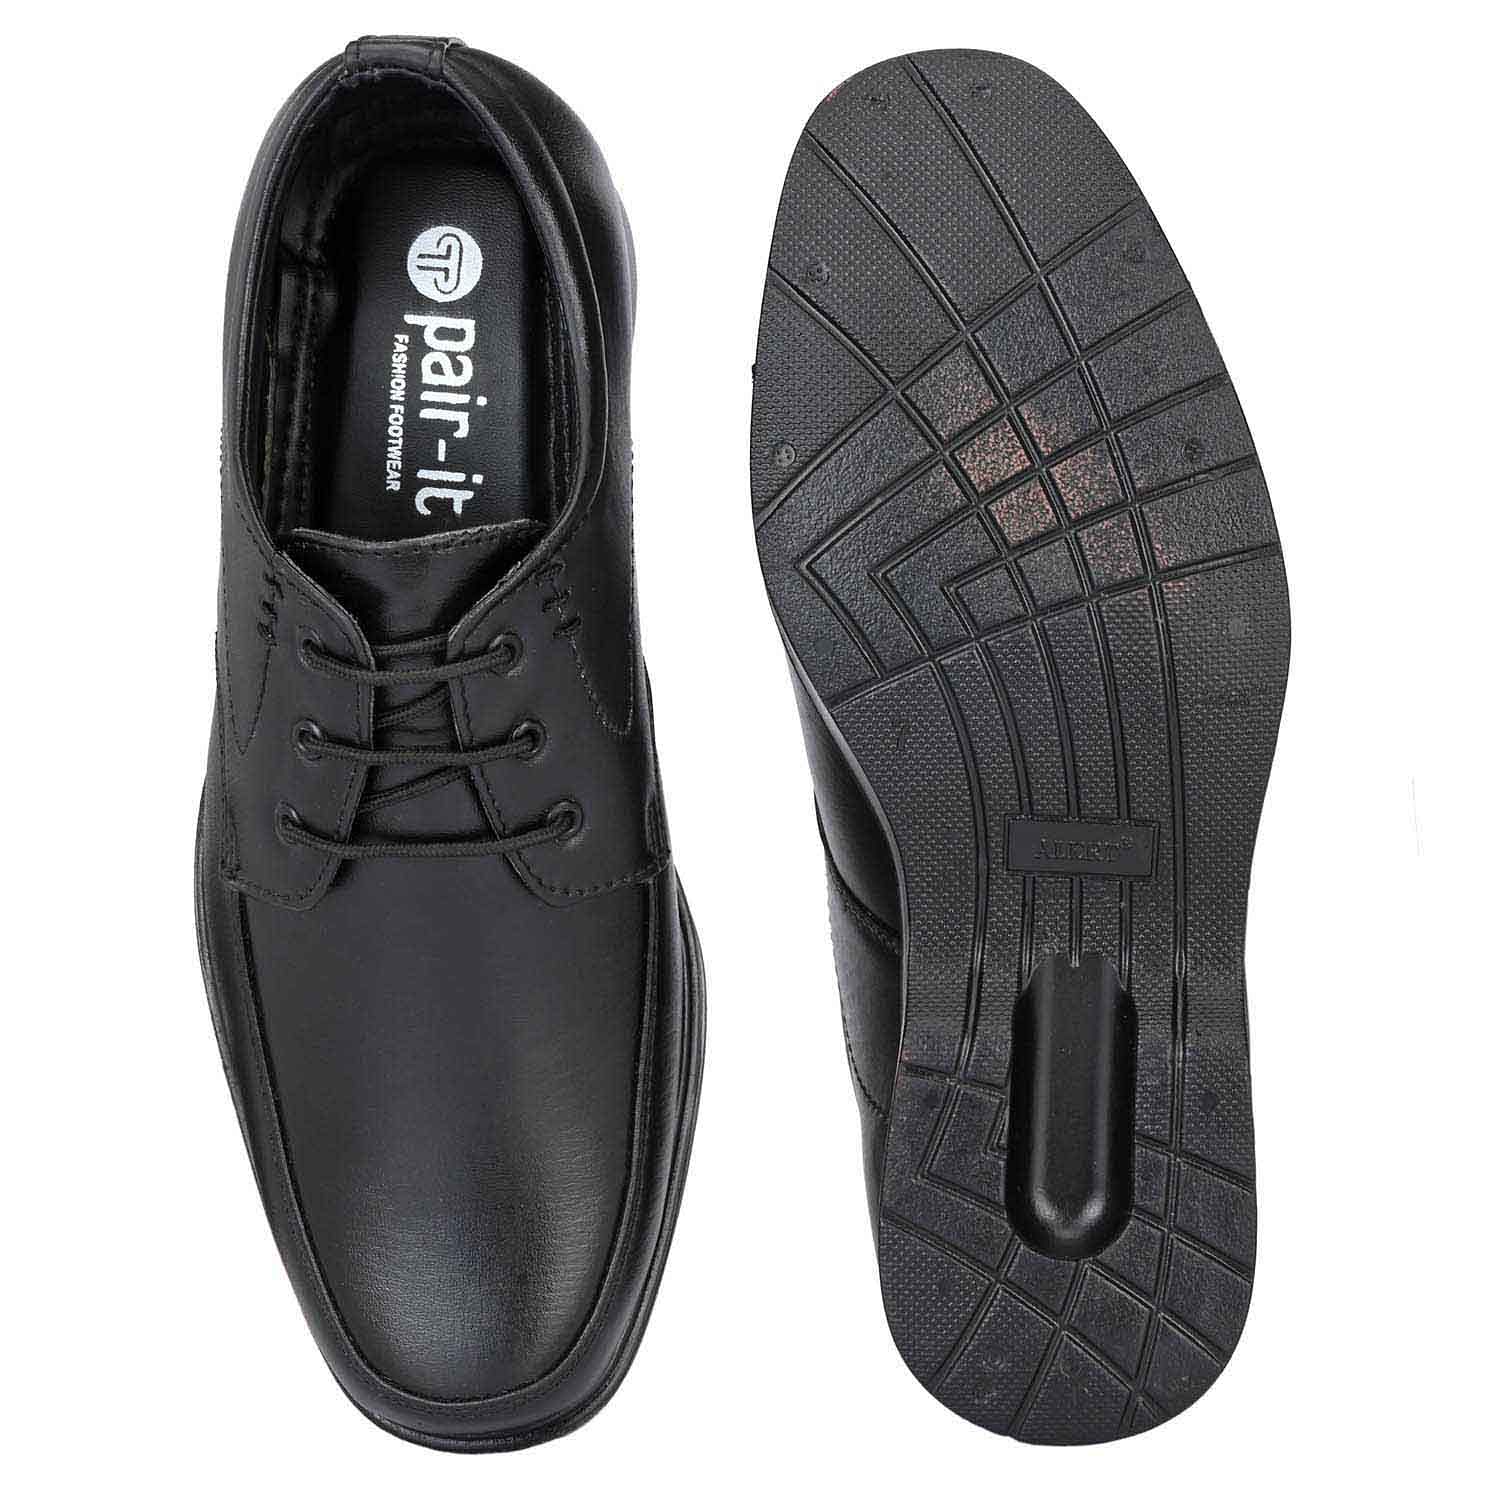 Pair-it Men moccasin Formal Shoes - MN-RYDER223 - Black